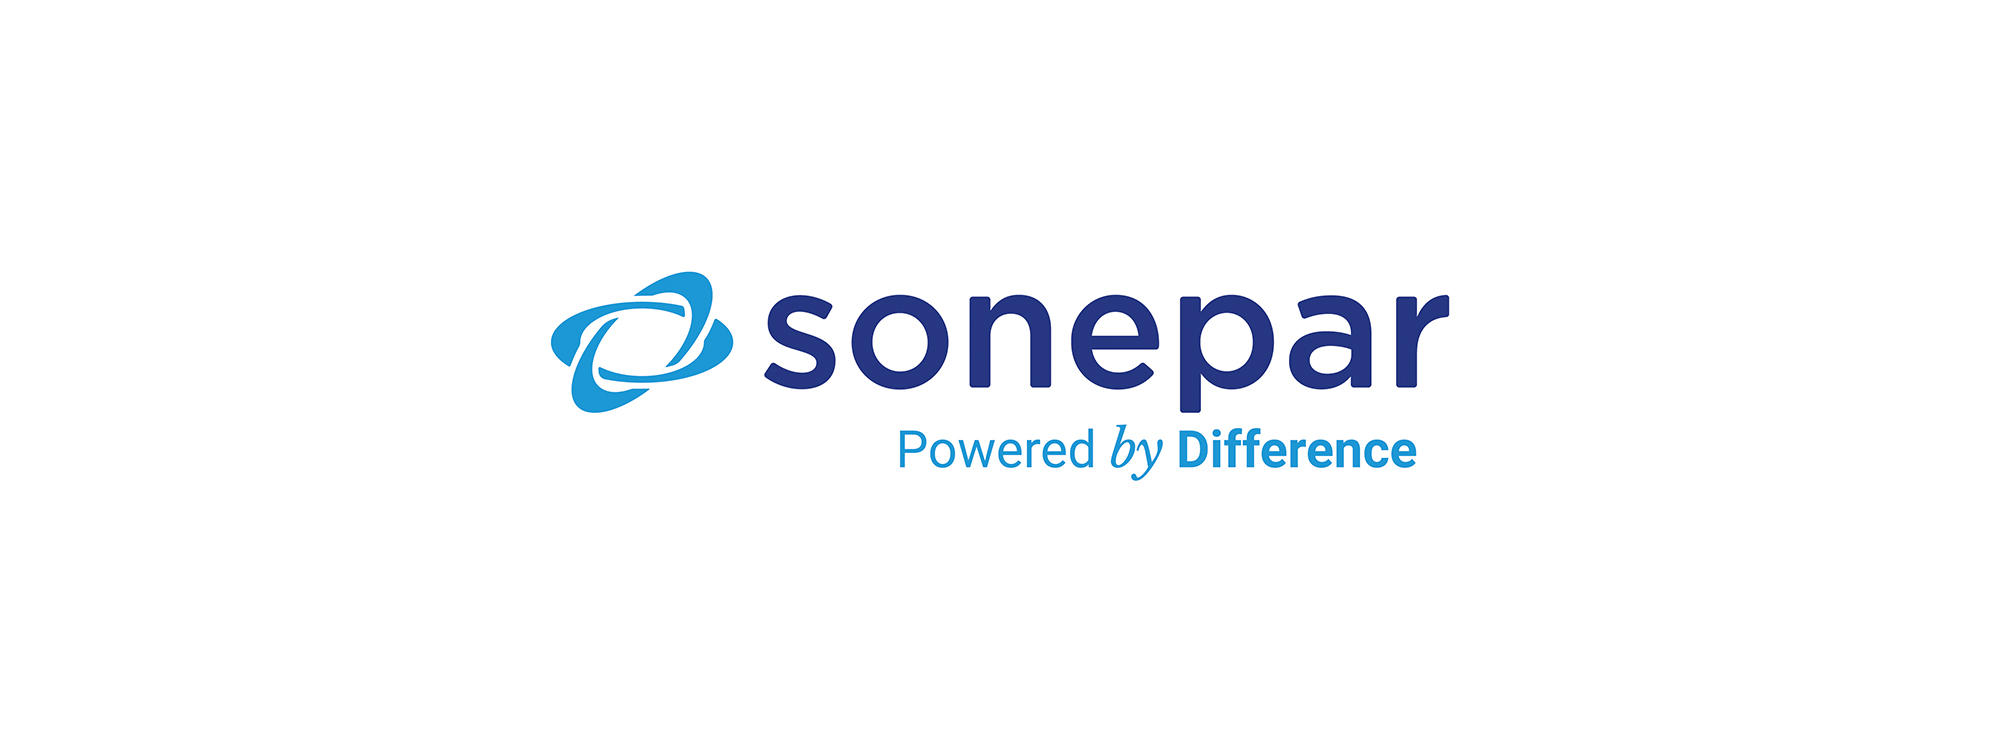 couv_sonepar_new_logo